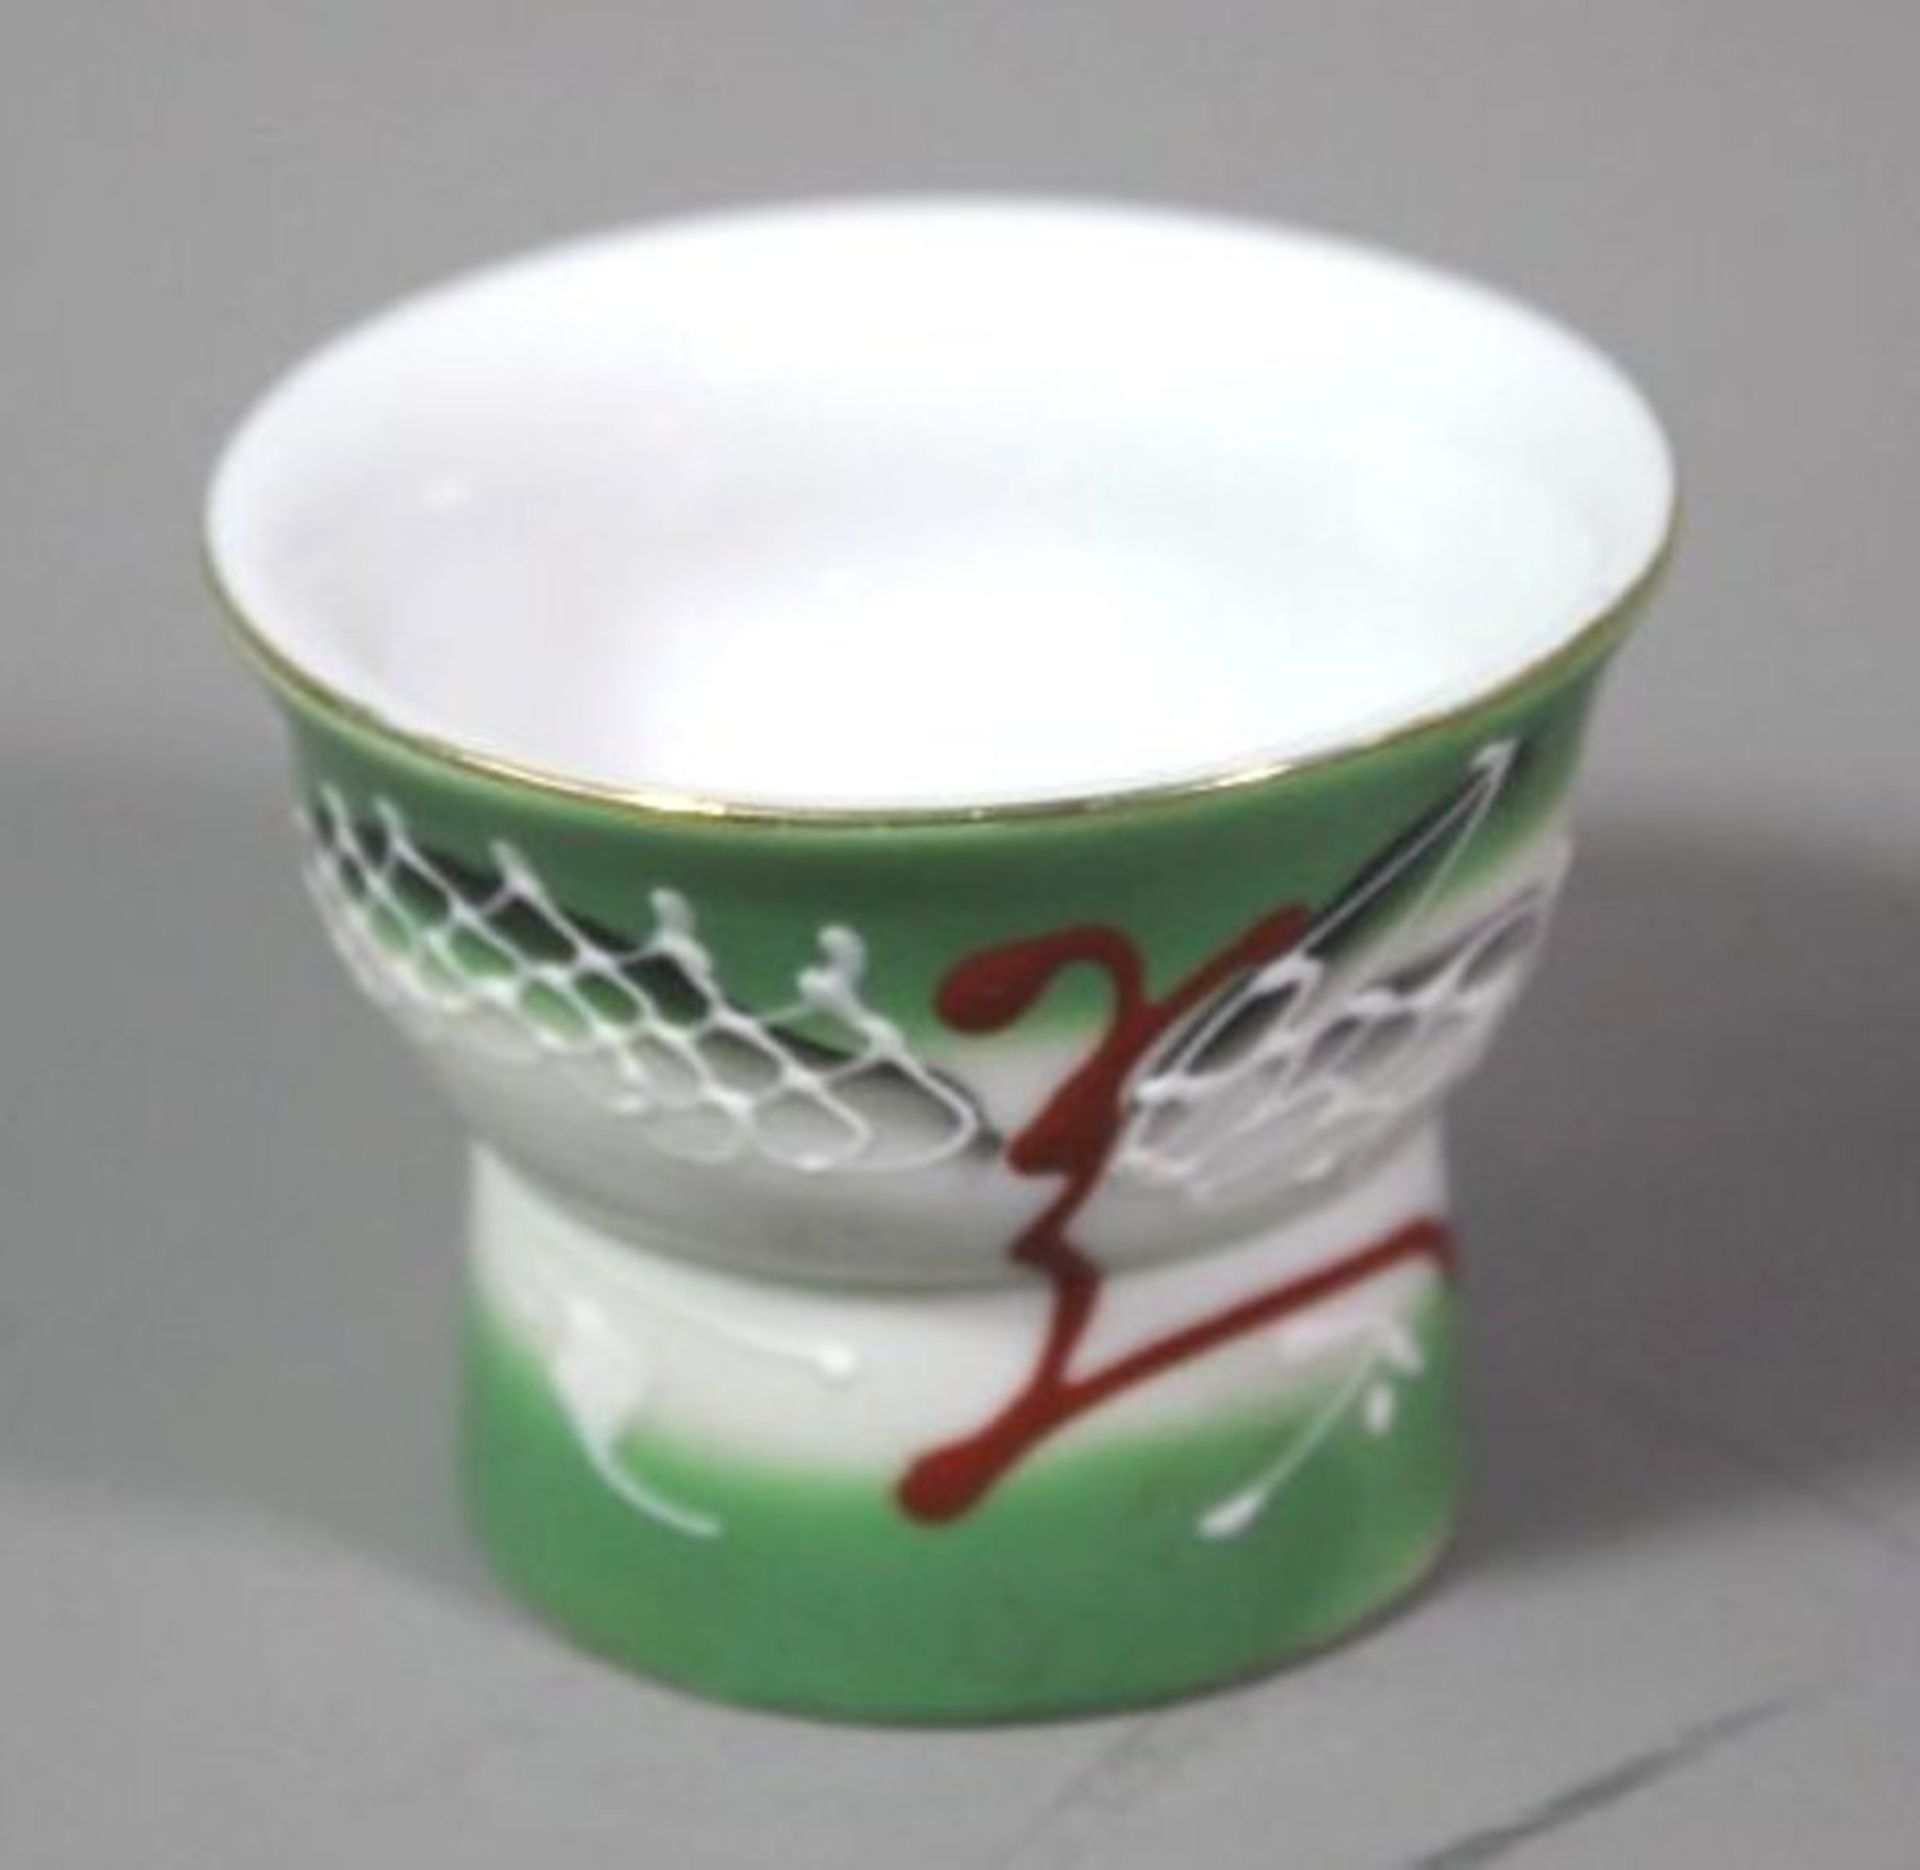 6x Sake-Becher mit Lupenglas, erotische Darstellungen, 1x Boden fehlt, wohl 60/70er Jahre, H-4,5cm. - Image 2 of 6